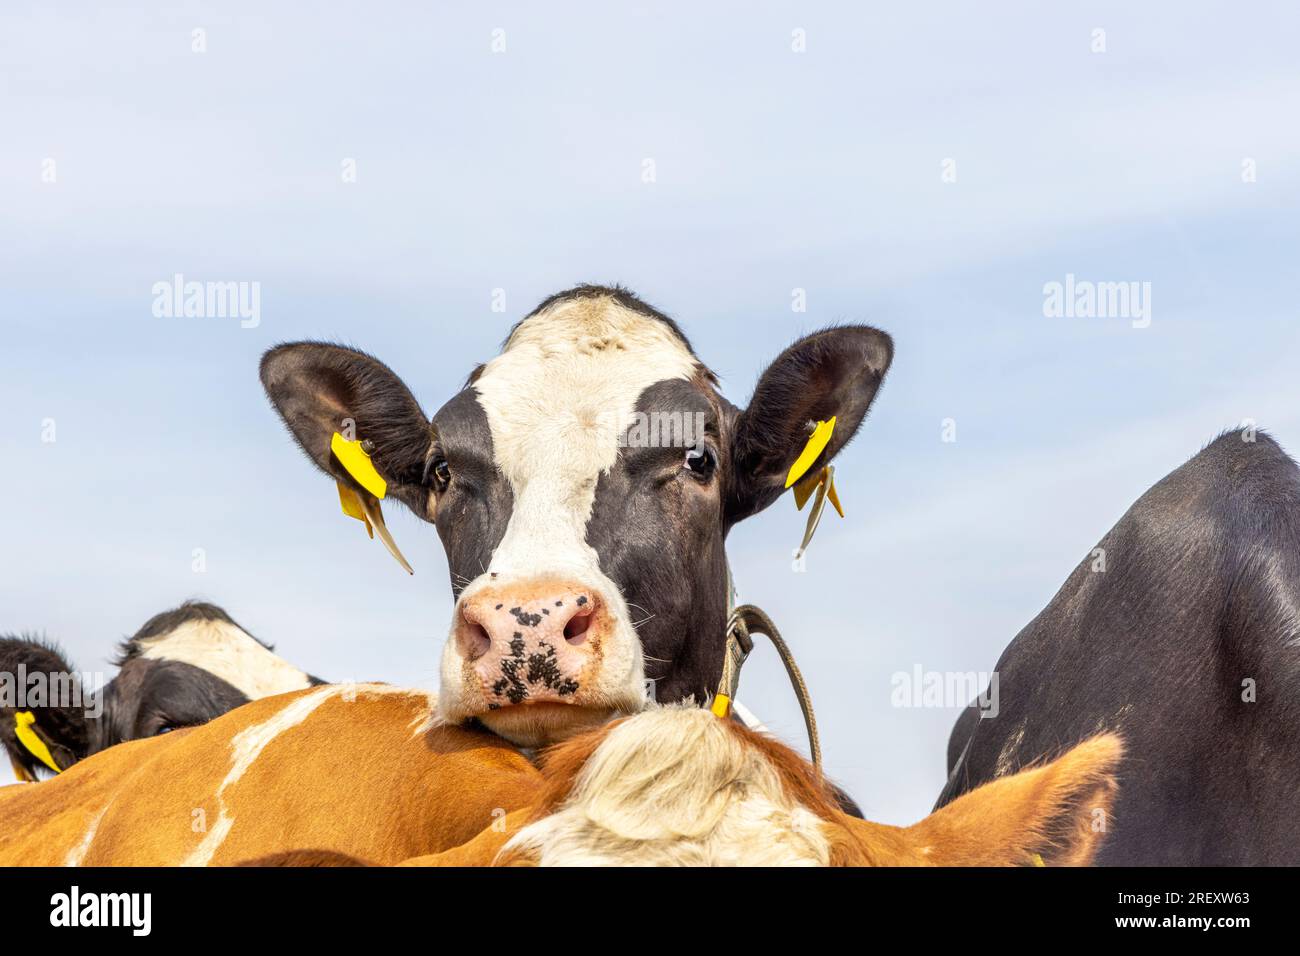 Vaca Nosy mirando sobre la espalda de otra vaca, franca y atrevida, blanco y negro y una nariz rosa, un cielo azul Foto de stock